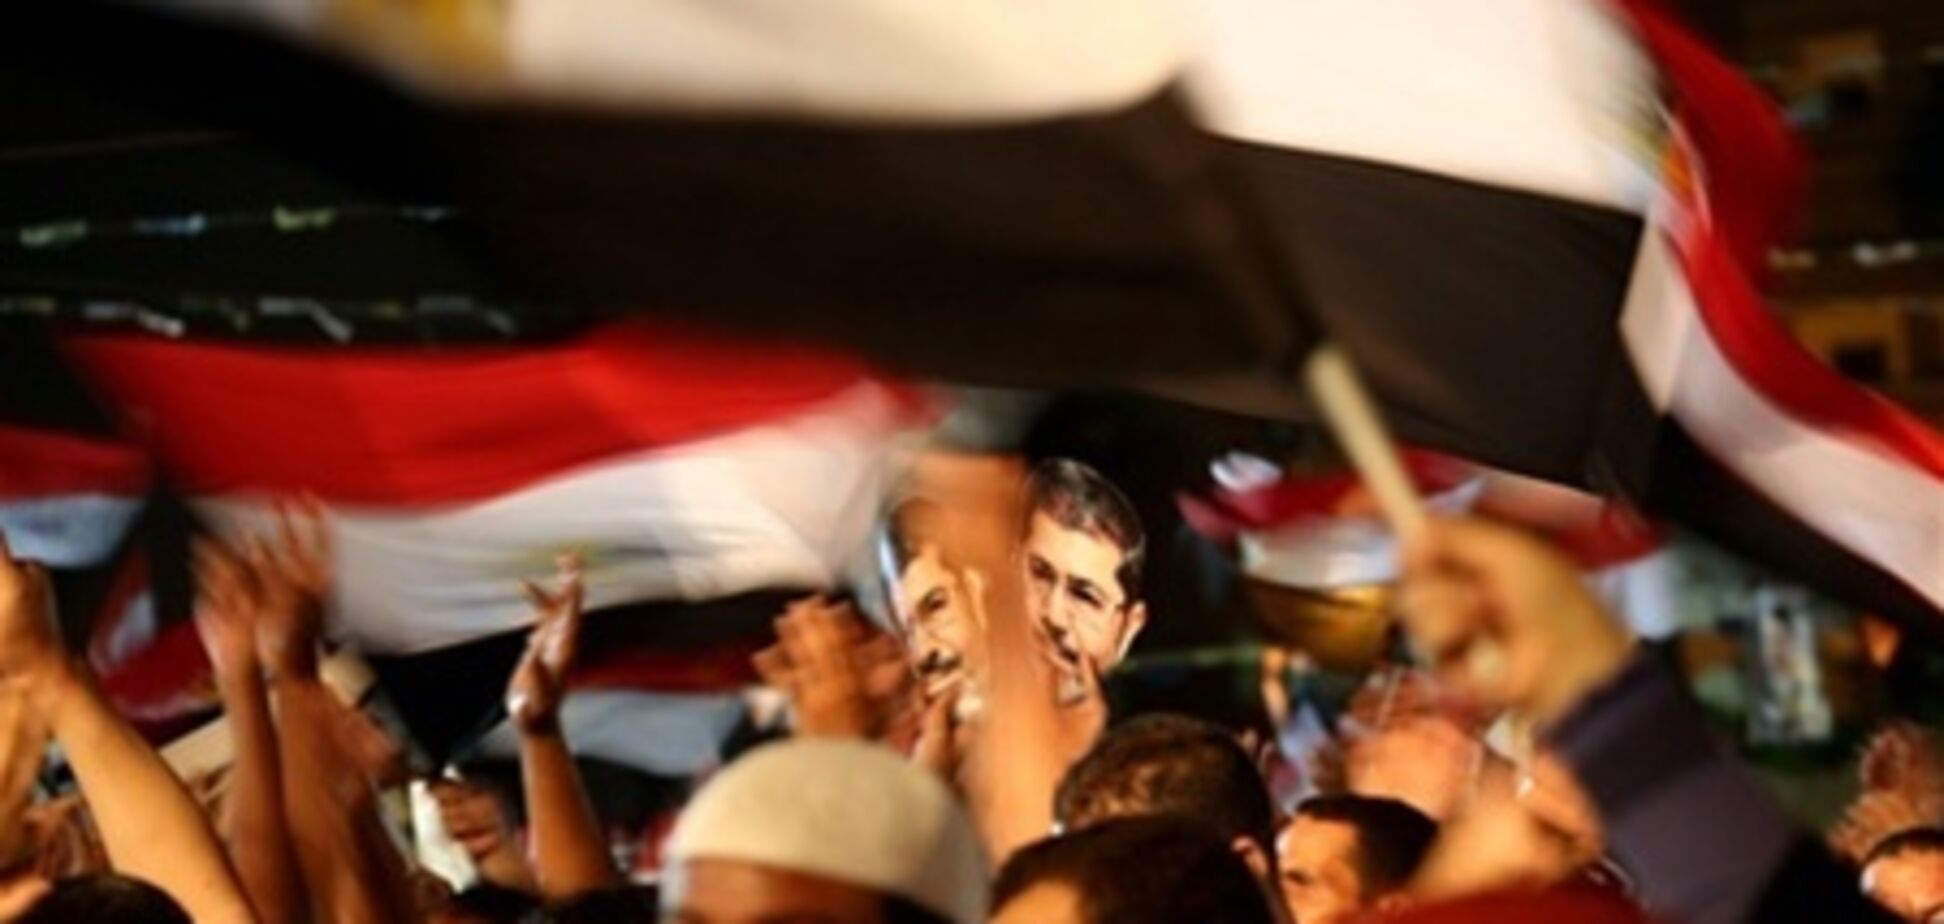 ЕС предложил посредничество в разрешении кризиса в Египте